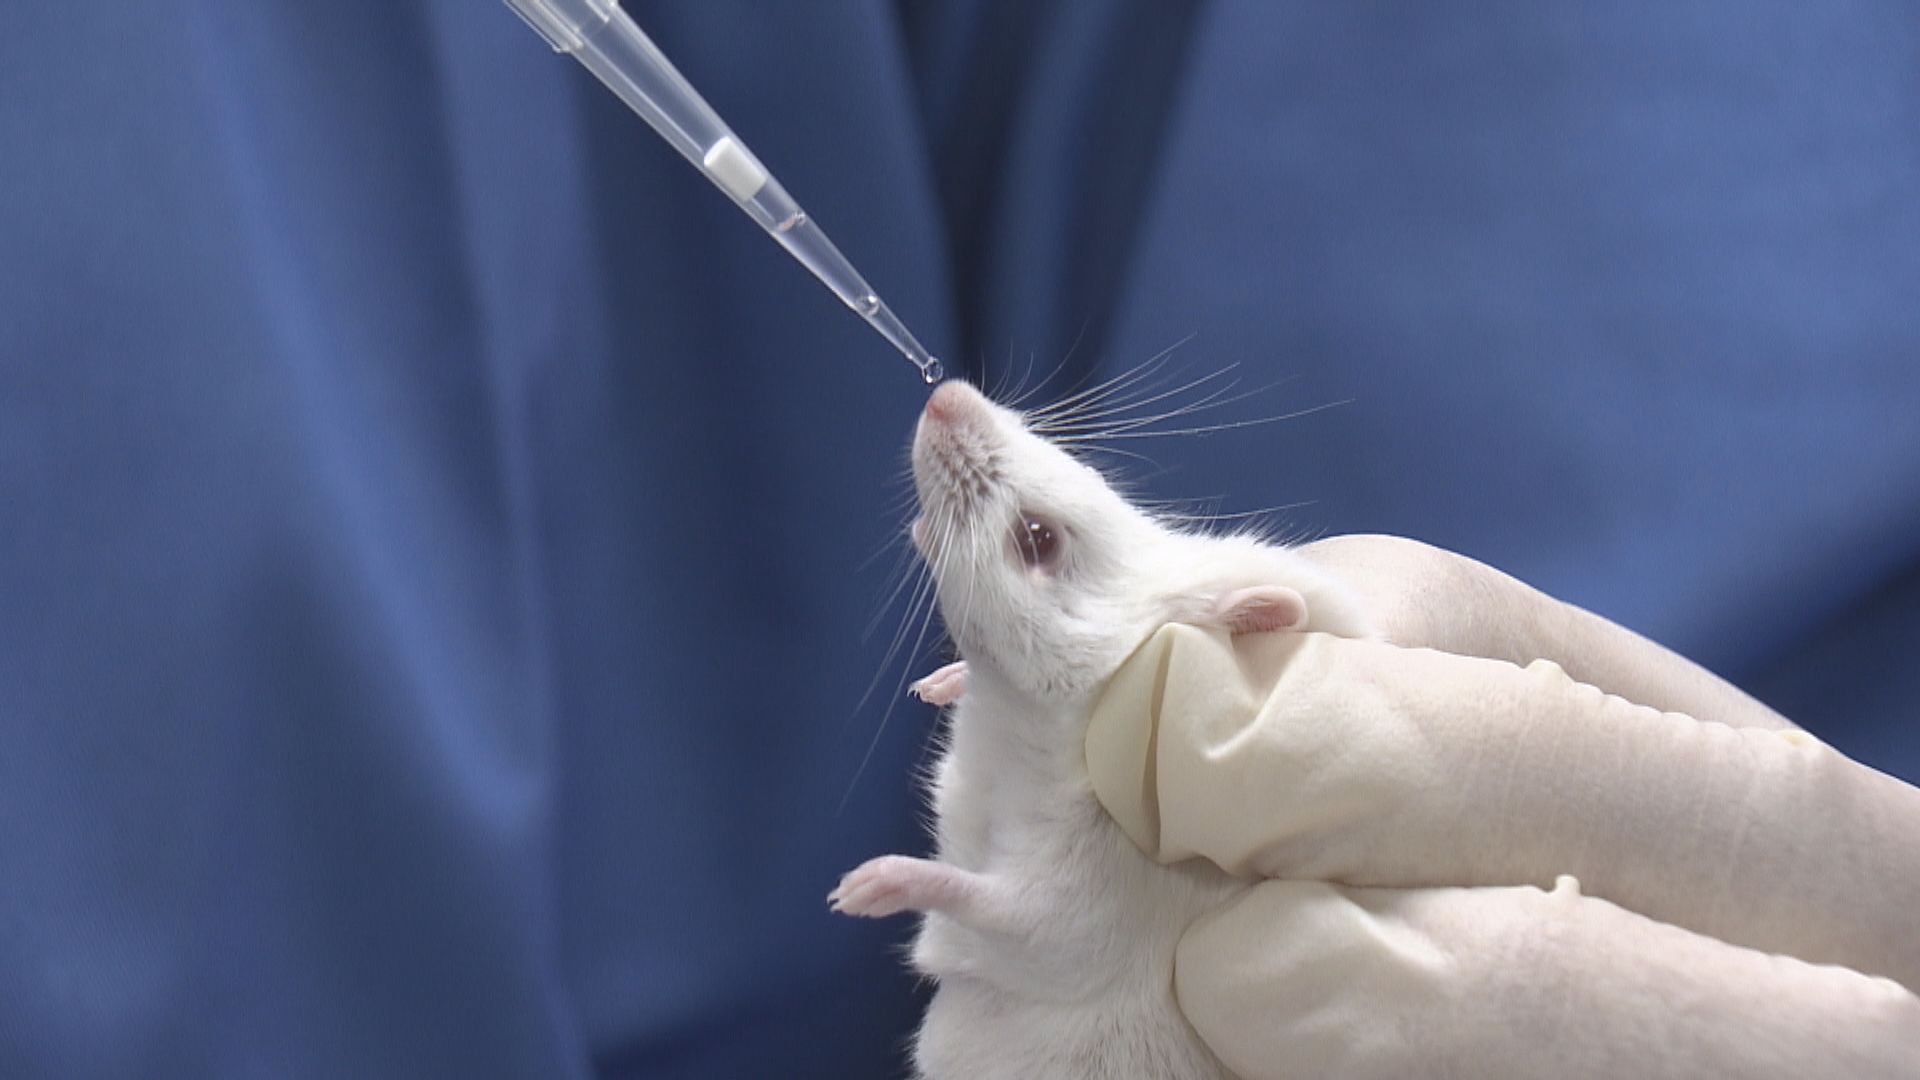 瑞士禁動物及人體實驗公投料不獲通過